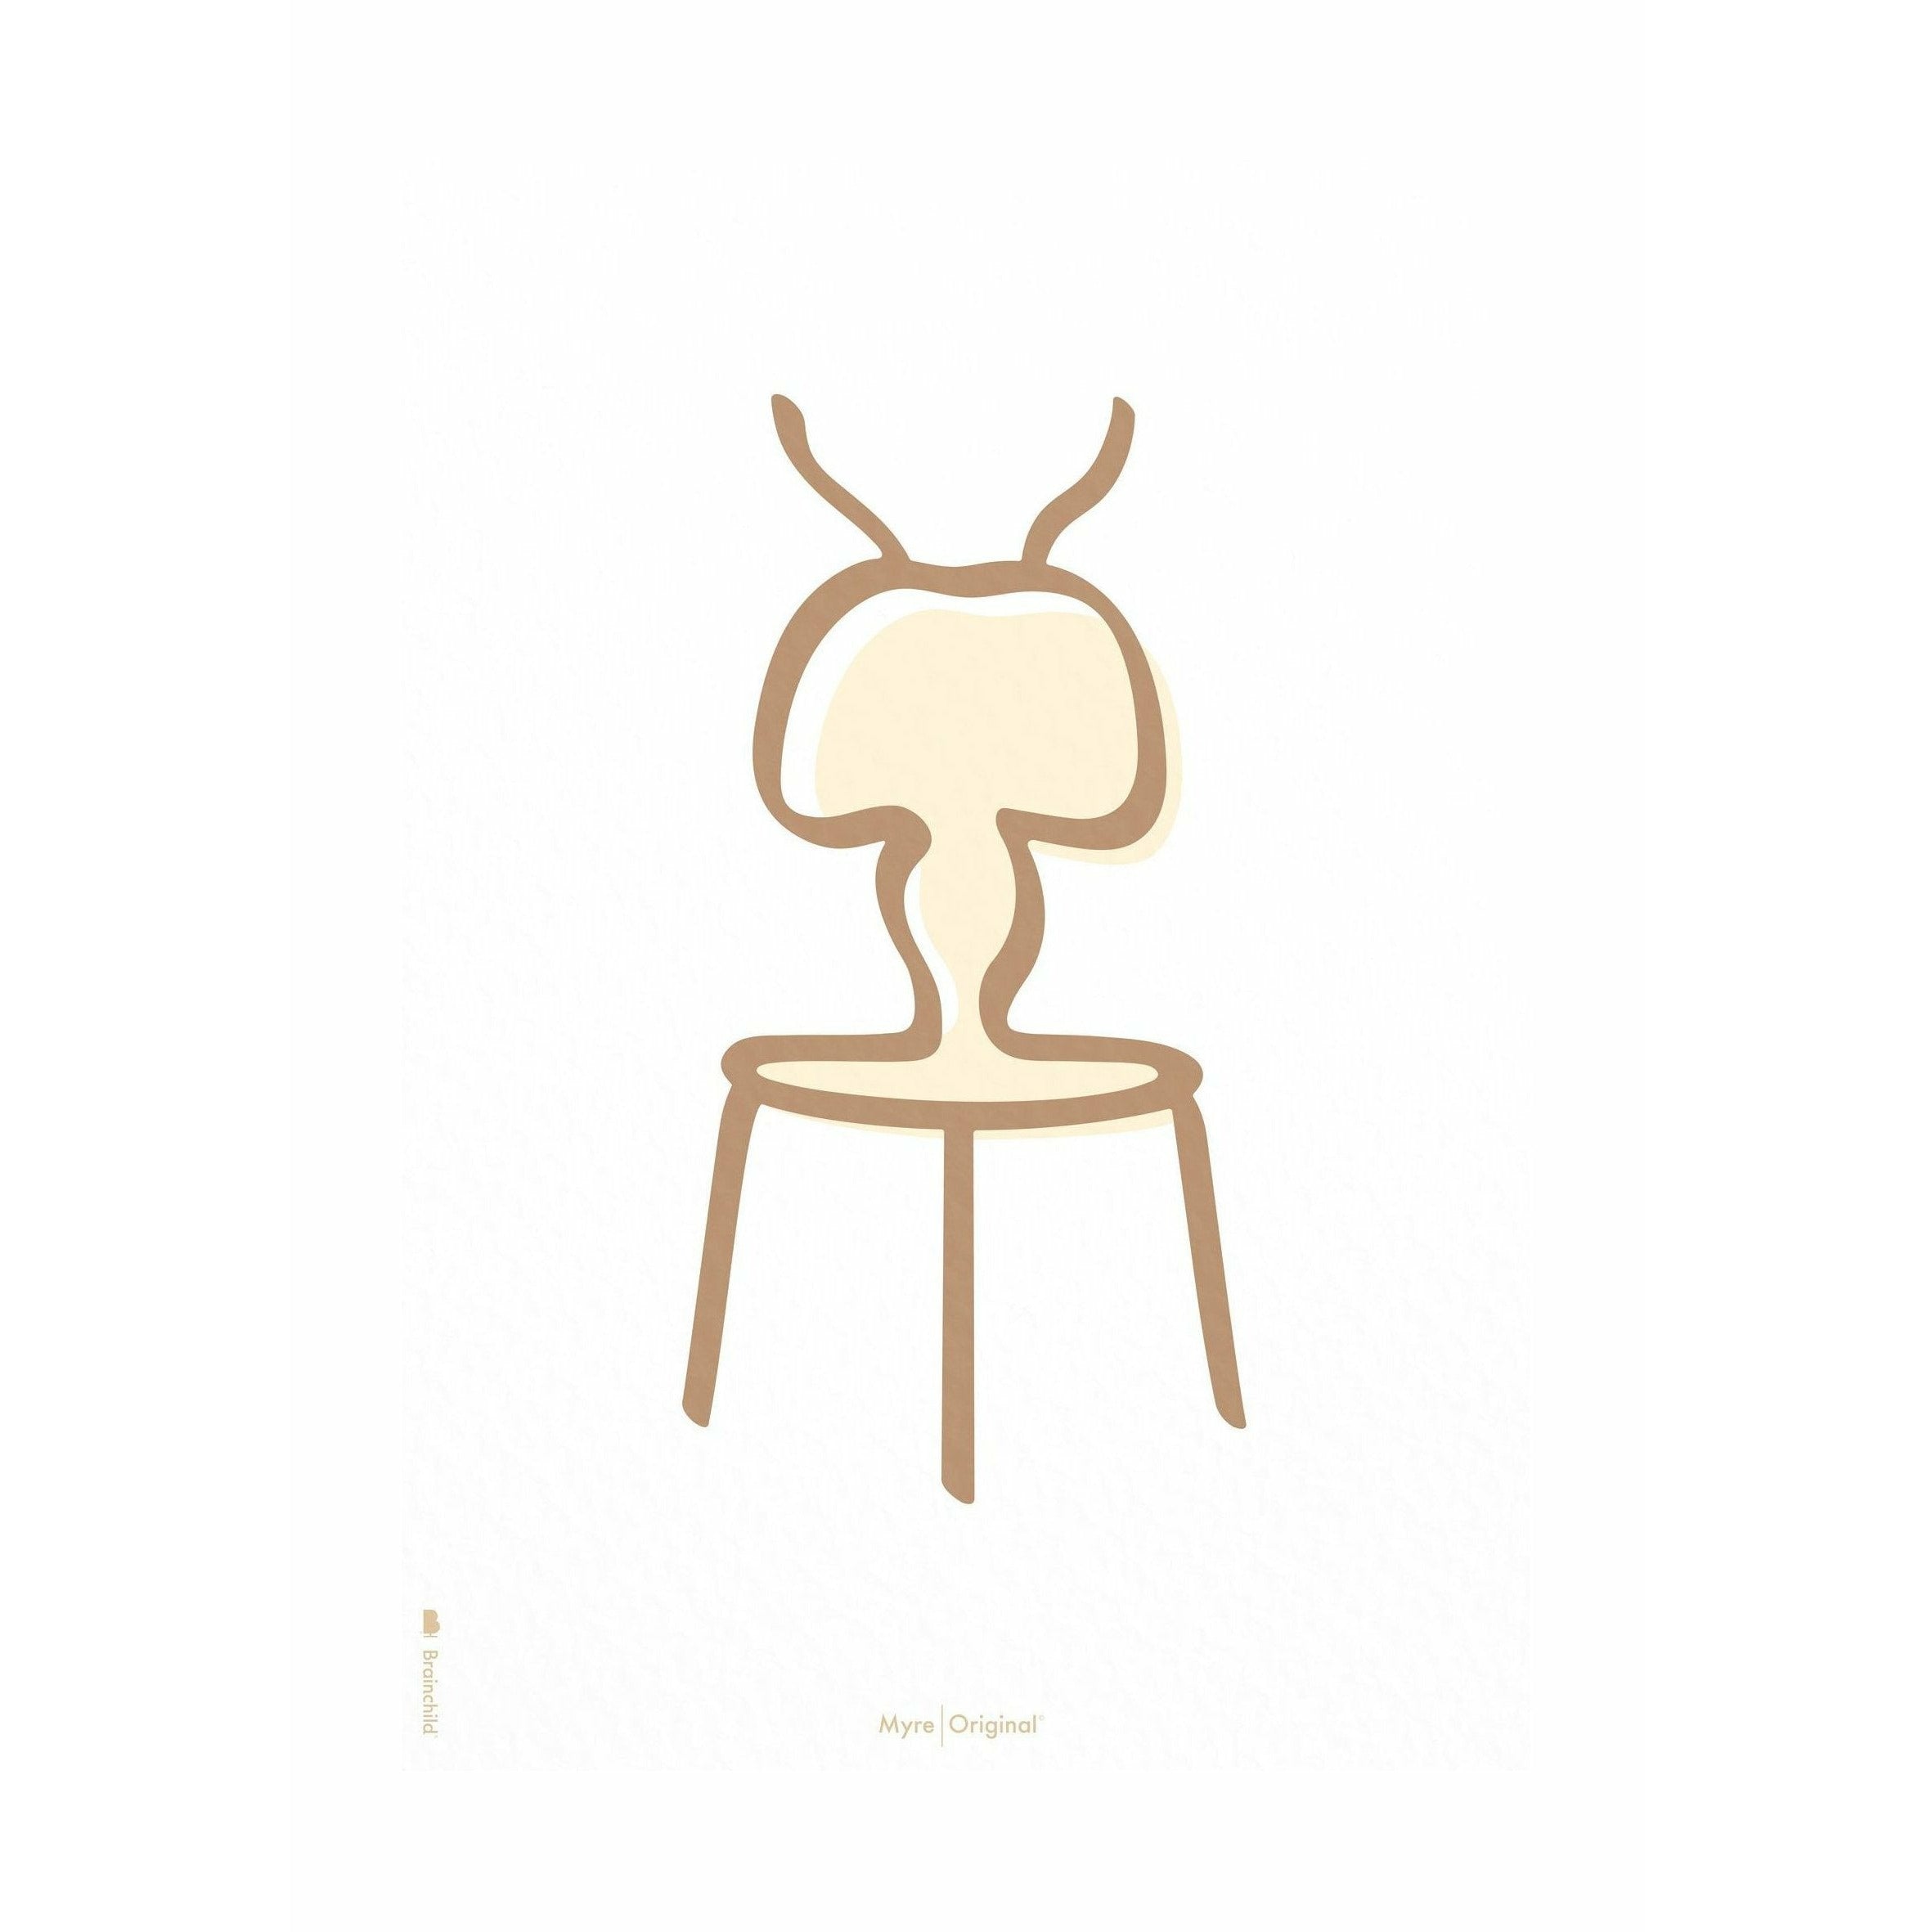 Plakát Ant Line Brainchild bez rámu 30x40 cm, bílé pozadí